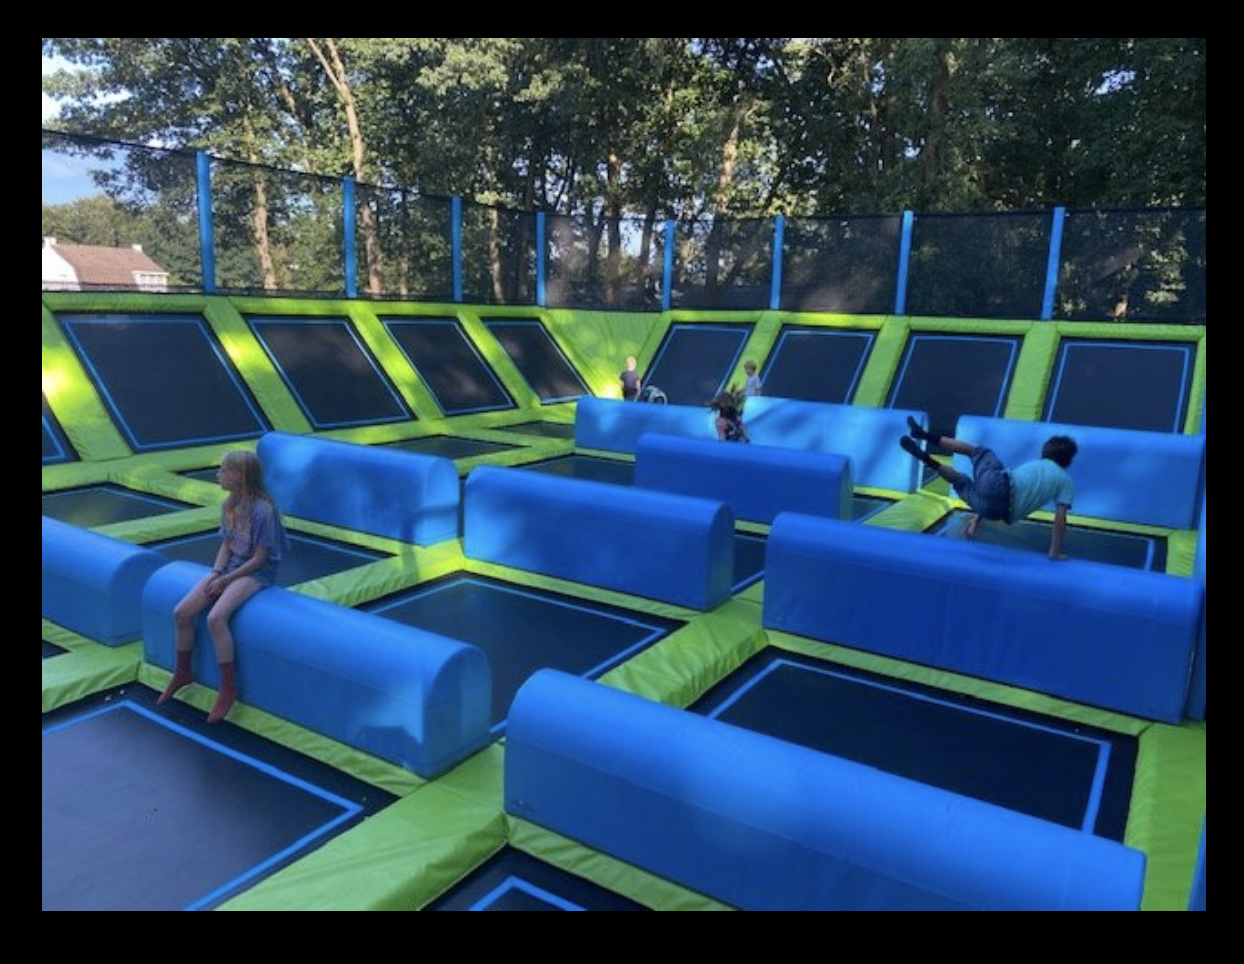 Prijswinnaar ’21 opent trampolinepark